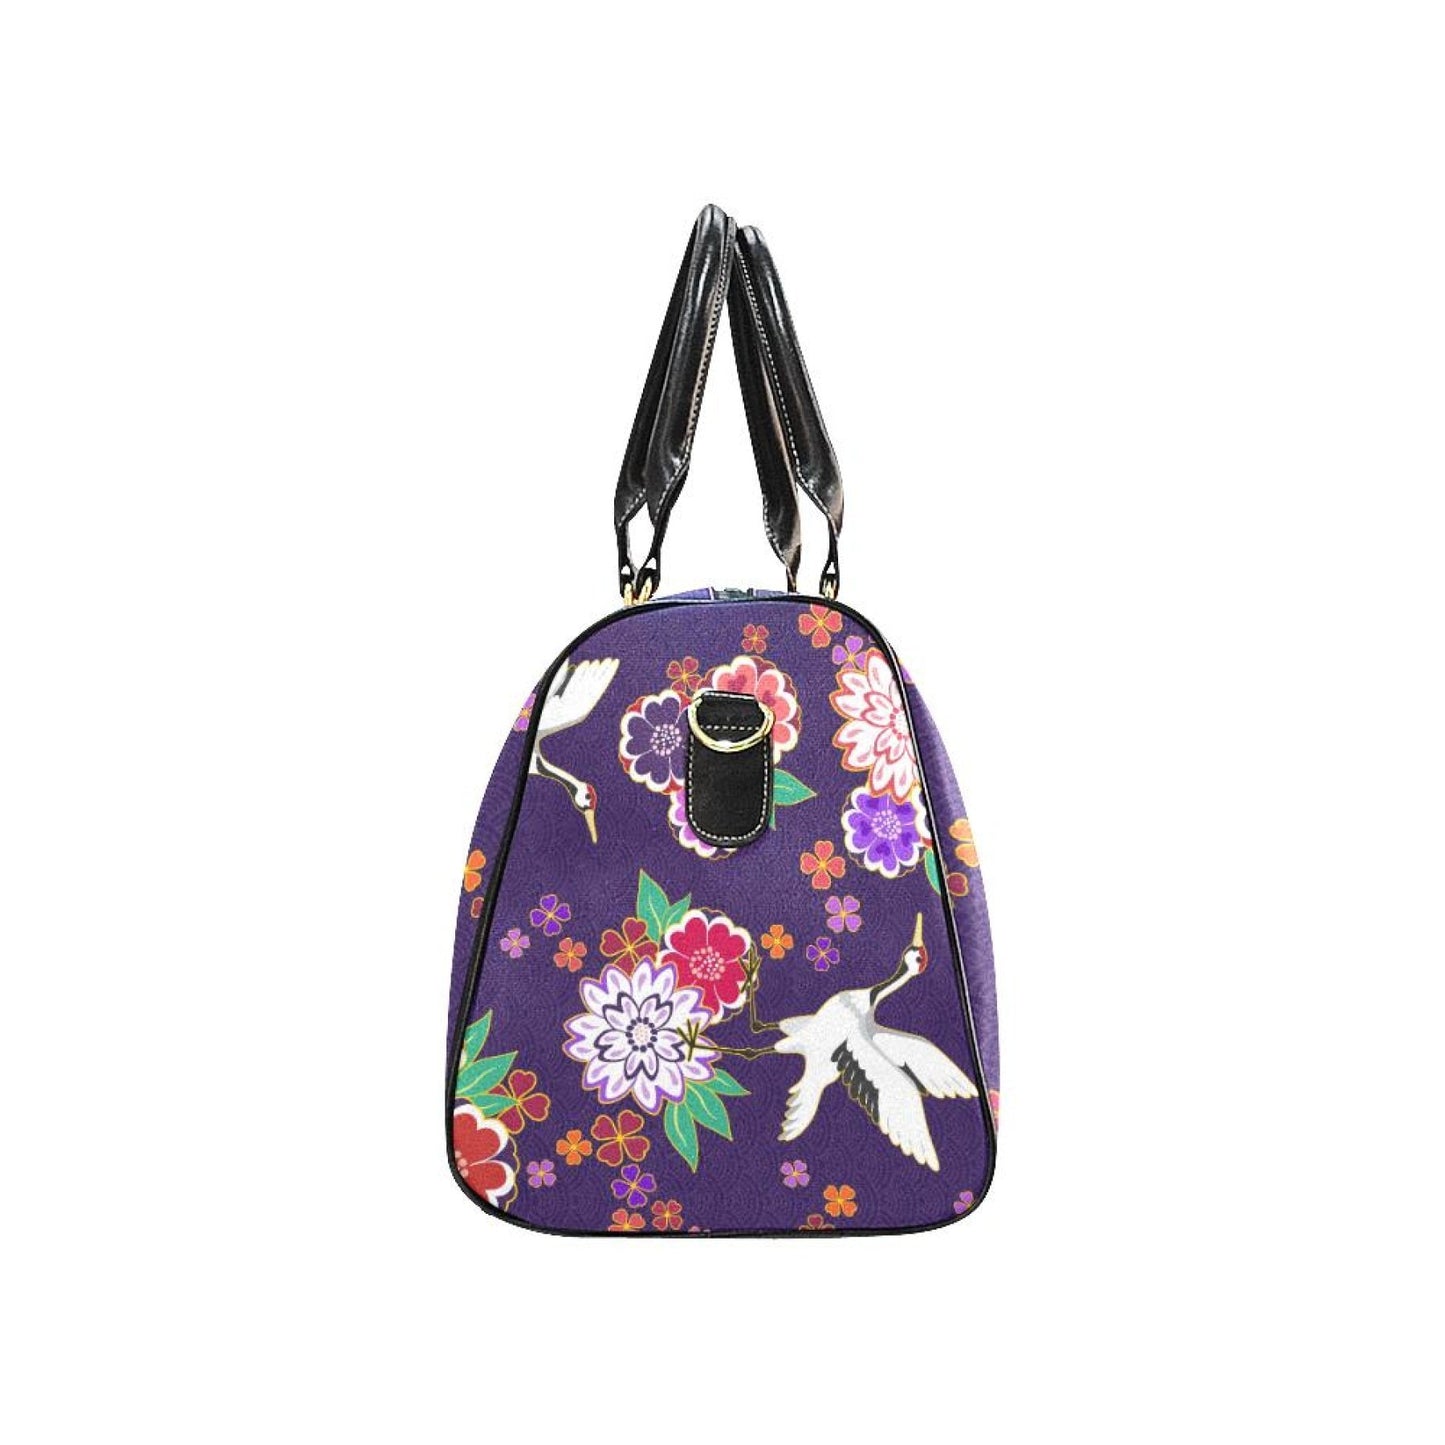 Uniquely You Travel Bag, Purple Floral Double Handle Carry-Bag Handbags